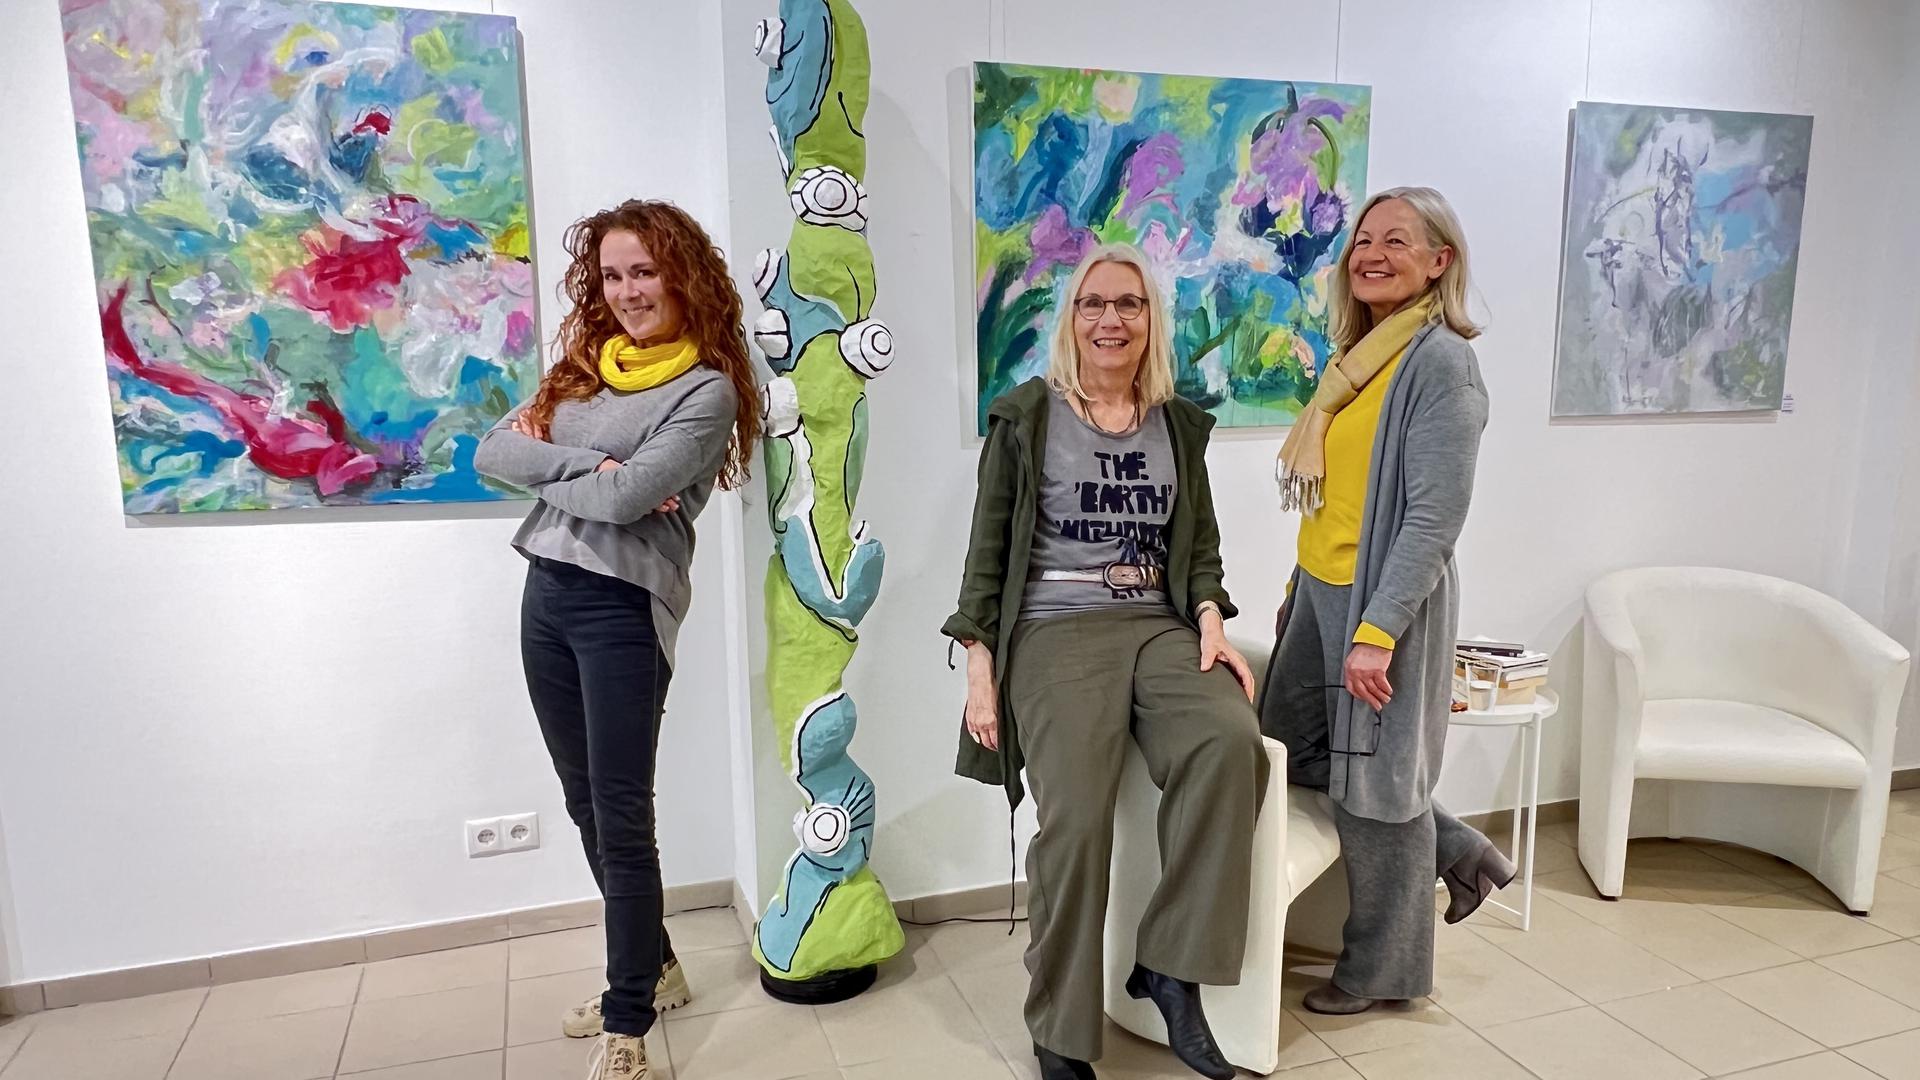 Die Tausendsassas stellen in der ArtGalerie ihre Kunst aus. Von links: Martina Lammel, Sabine Henzler und Petra Moderegger.